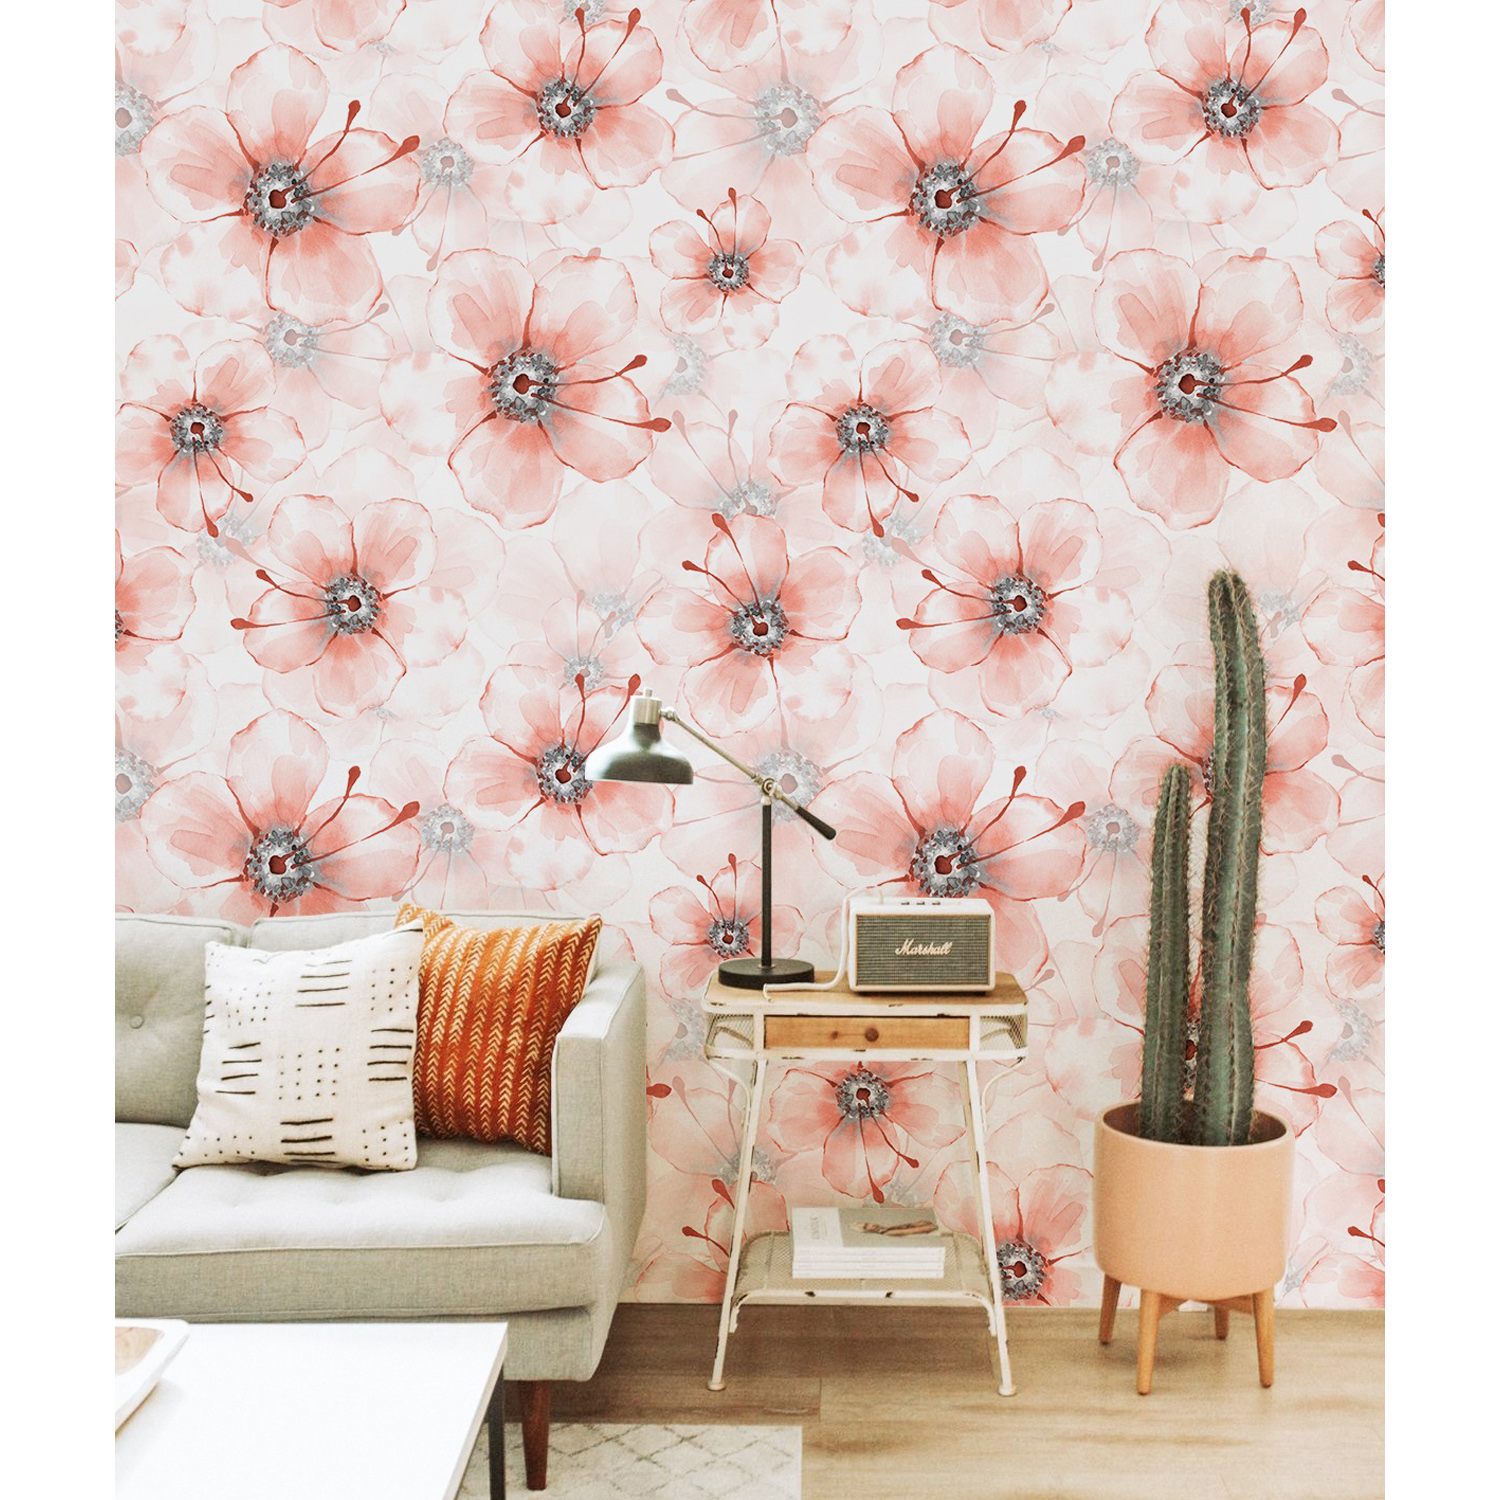 Cactus Living Room Decor - HD Wallpaper 